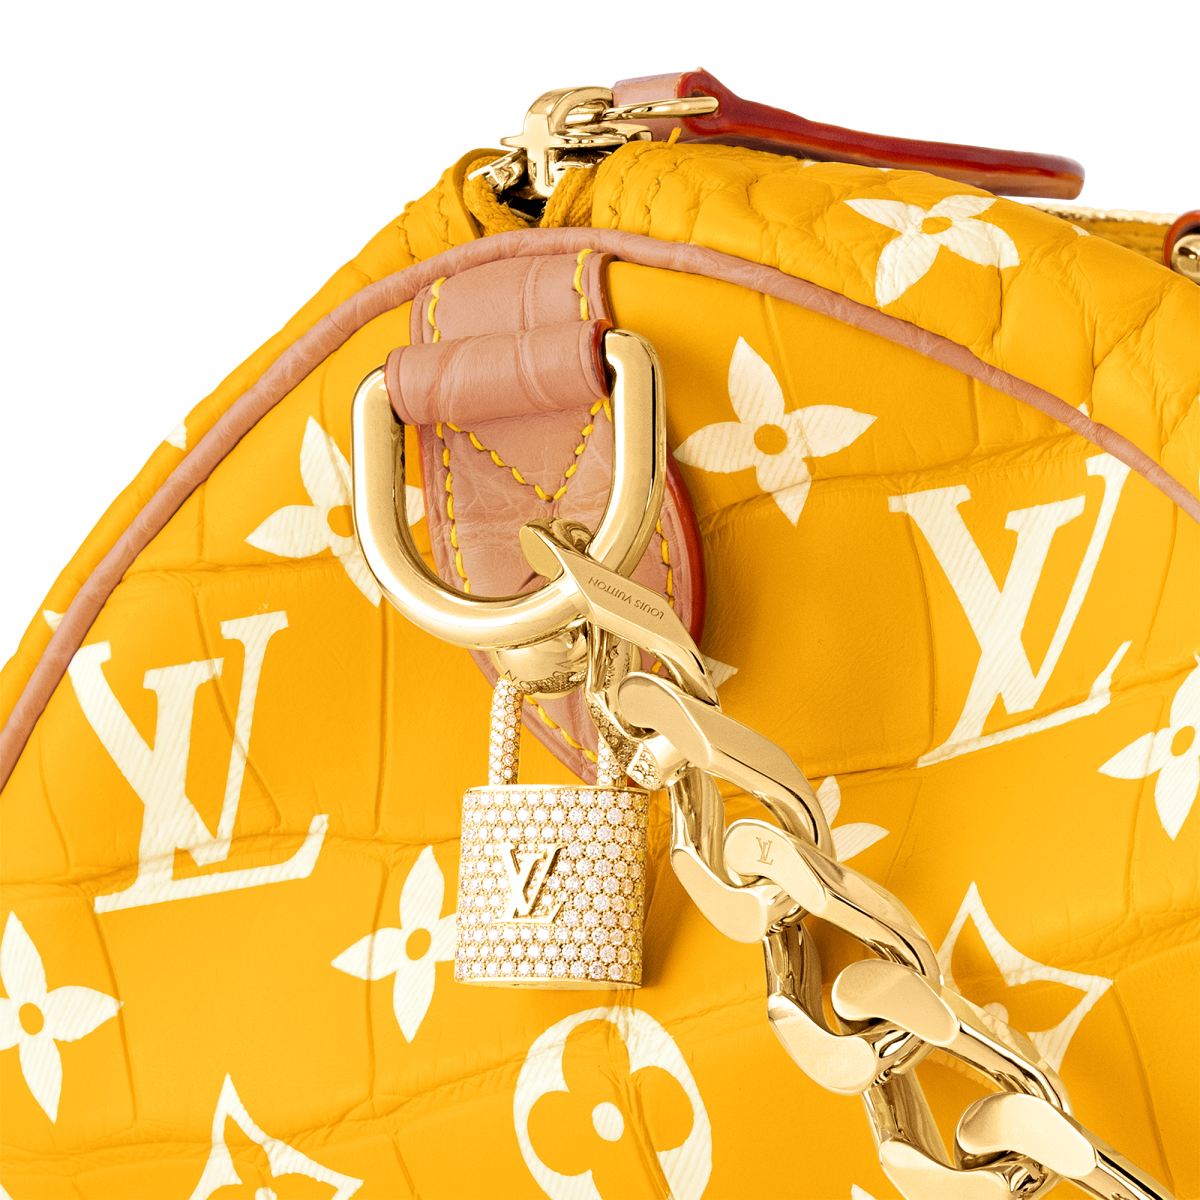 Louis Vuitton Bags Under $1,000